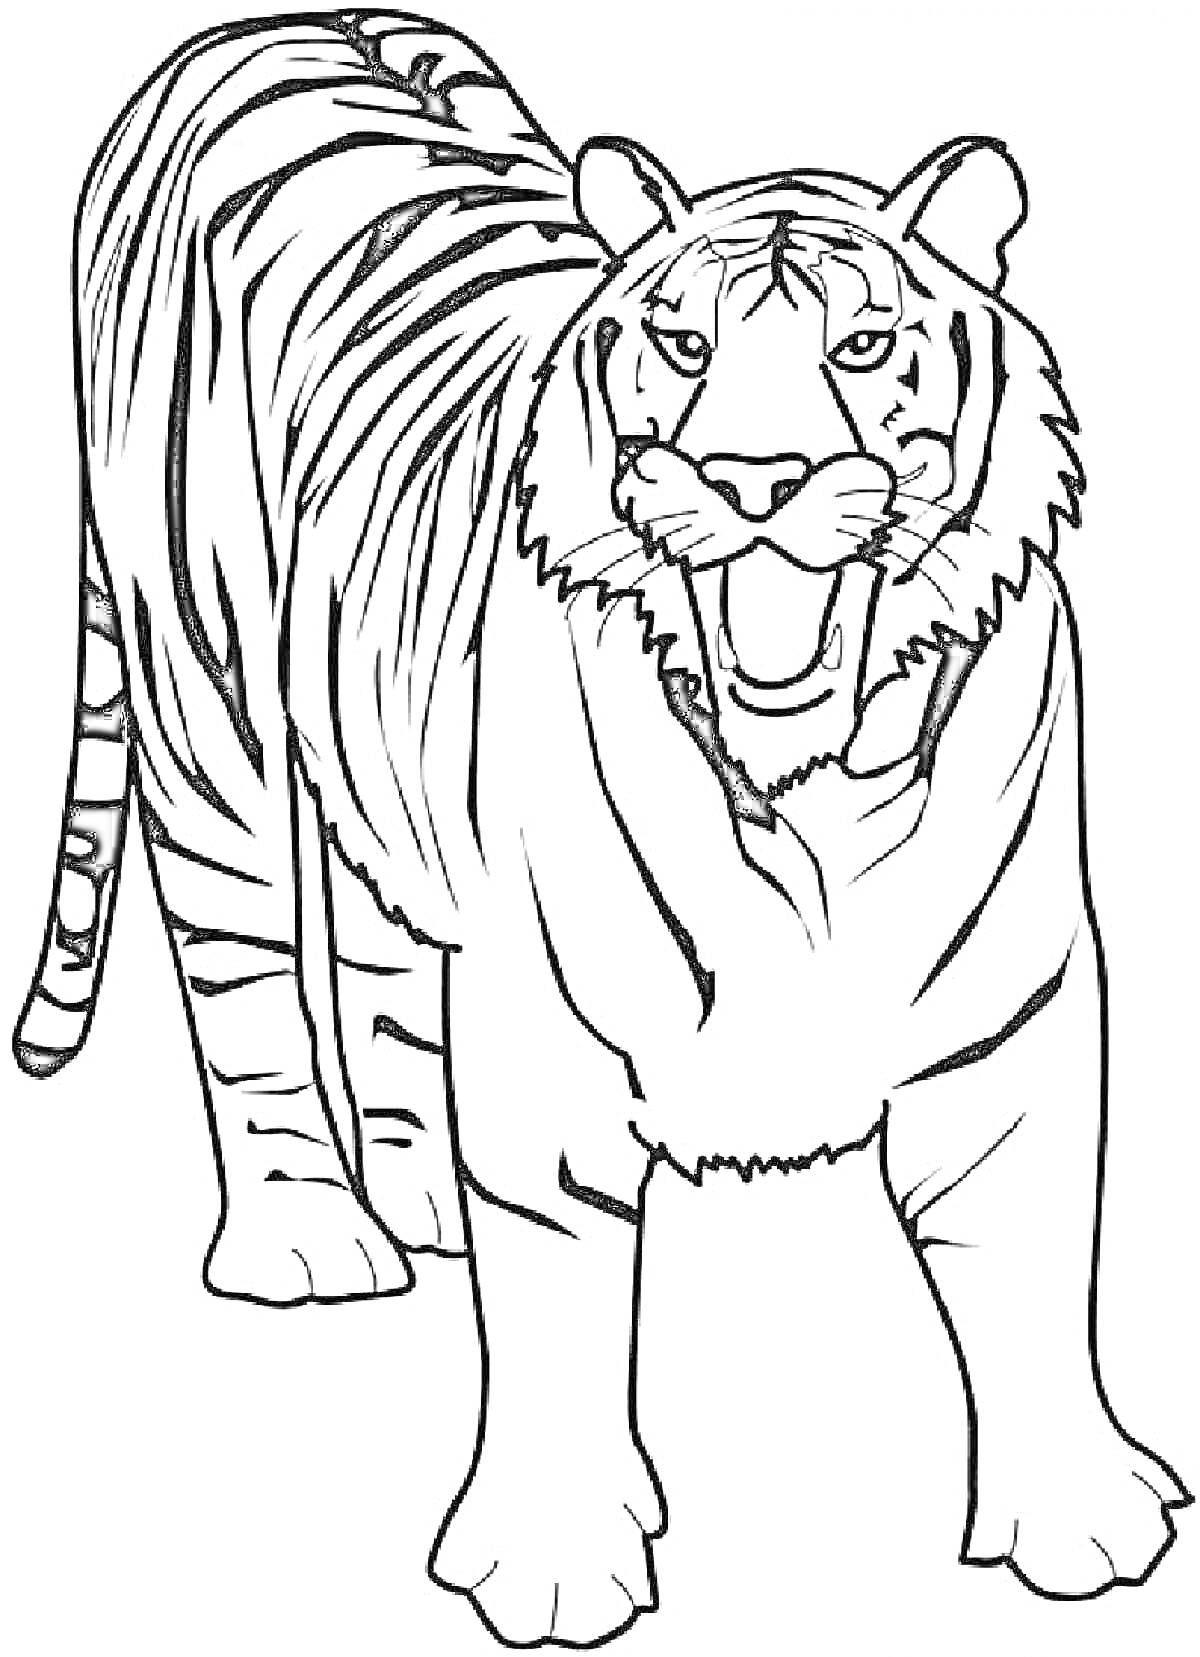 Тигр в полный рост с полосами на теле, стоящий на четырех лапах